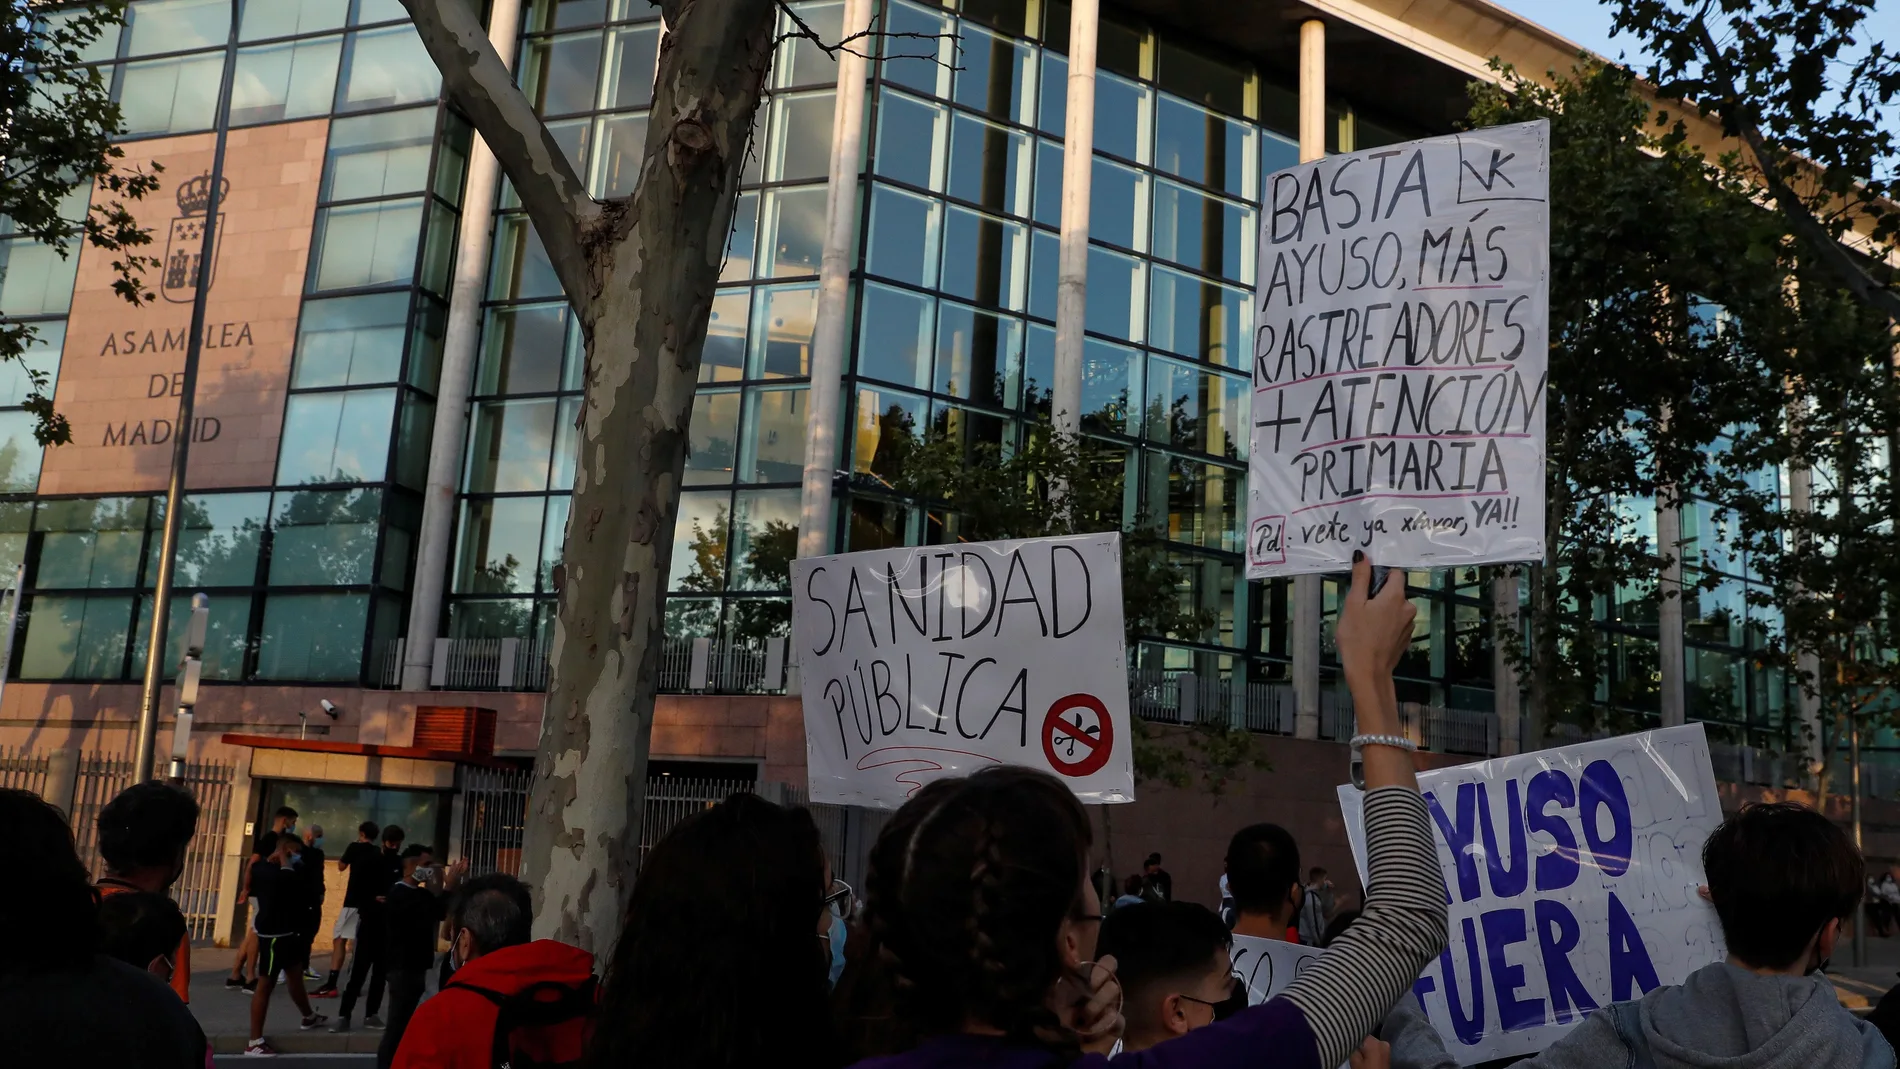 Asociaciones de vecinos protestan frente al Centro de Salud Ángela Uriarte en favor de la Sanidad Pública y contra los confinamientos selectivos, en el barrio de Puente de Vallecas, este jueves en Madrid. EFE/Emilio Naranjo